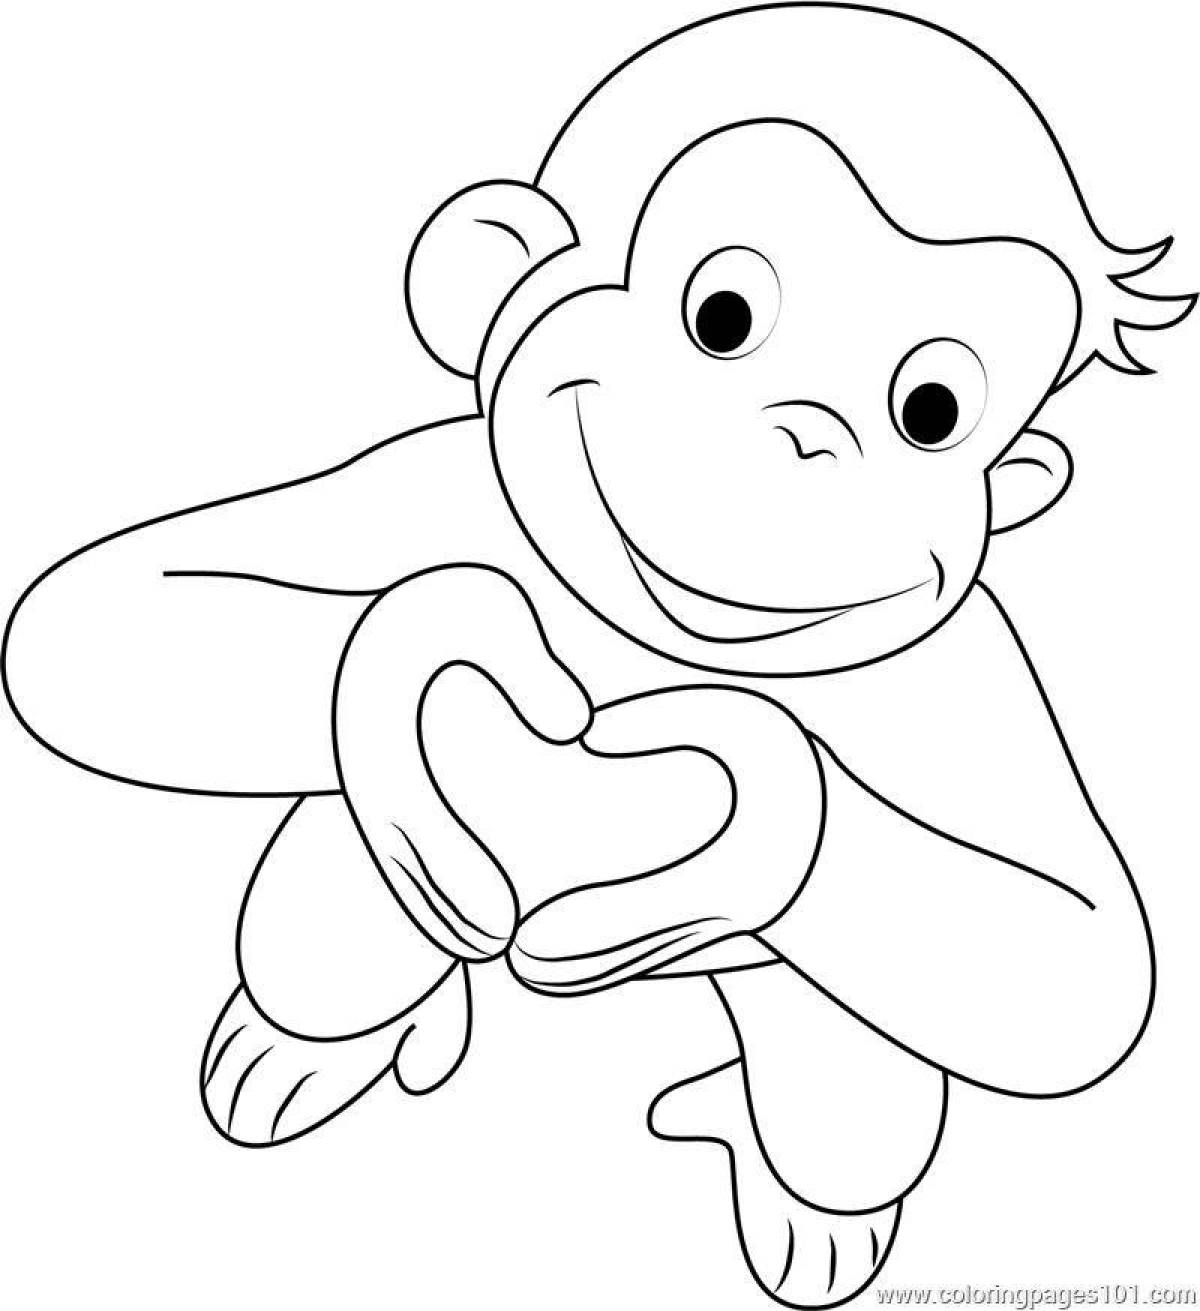 Неотразимая раскраска обезьяна для детей